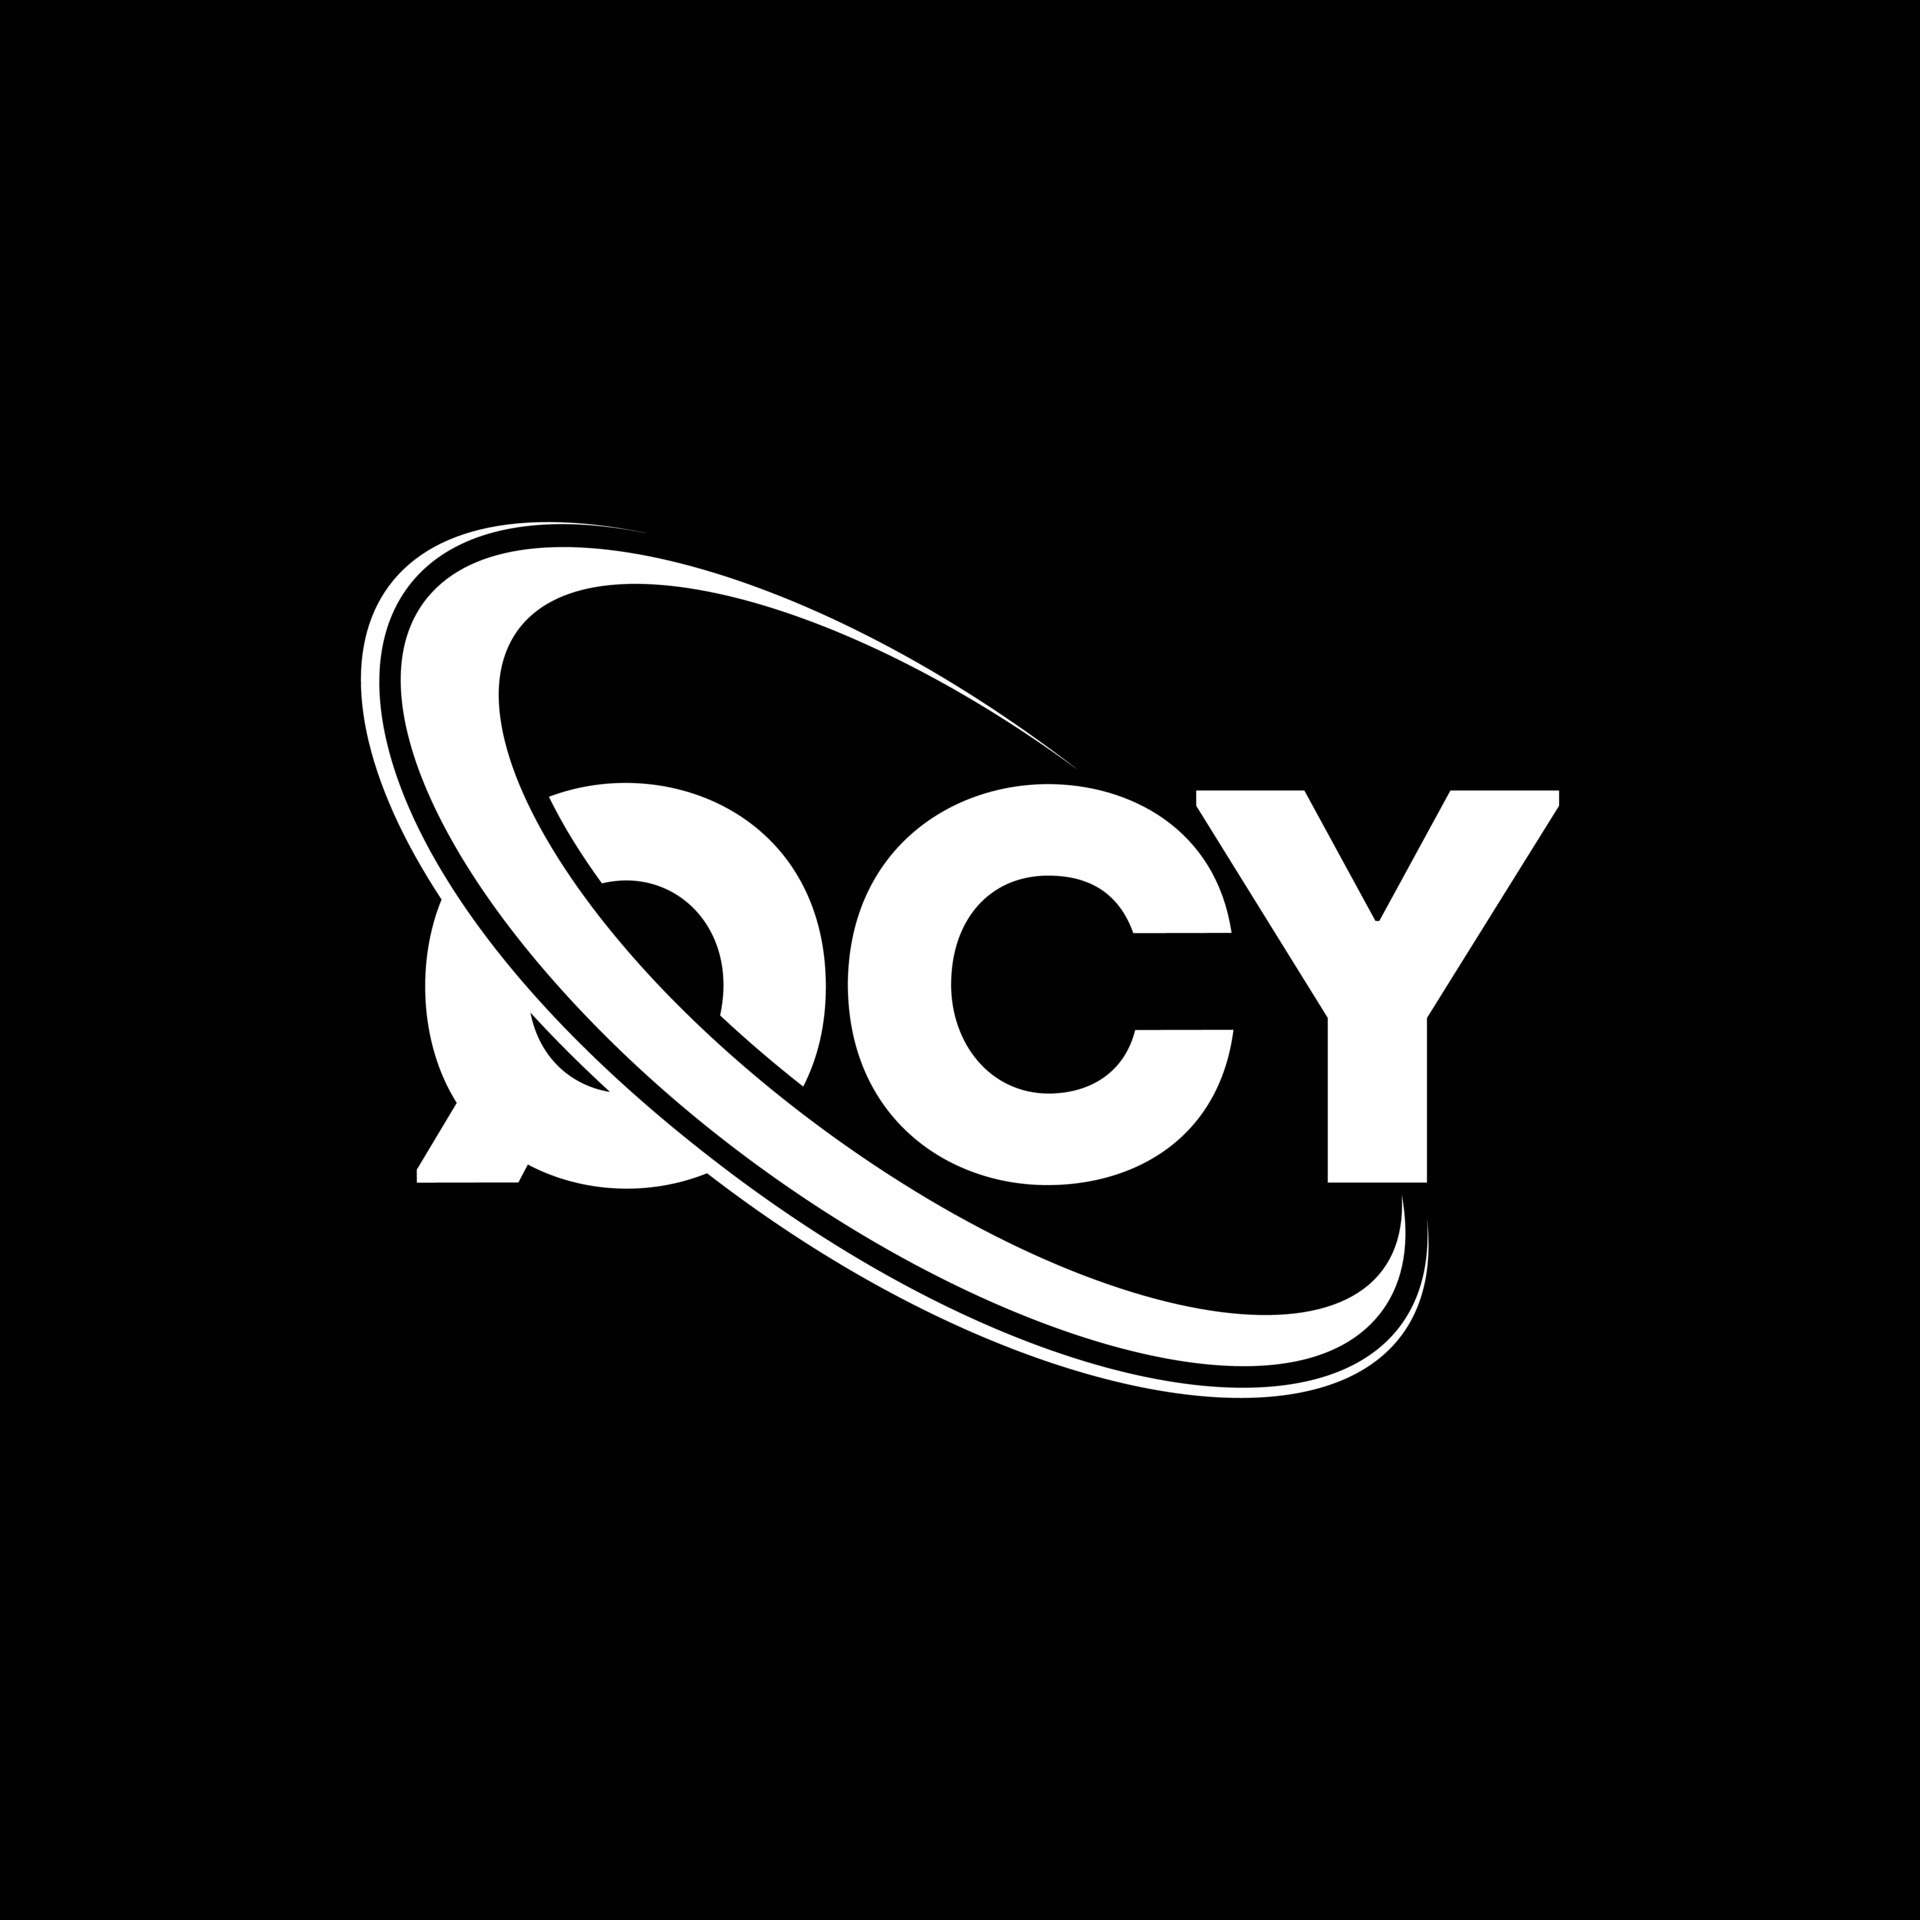 qcy logo